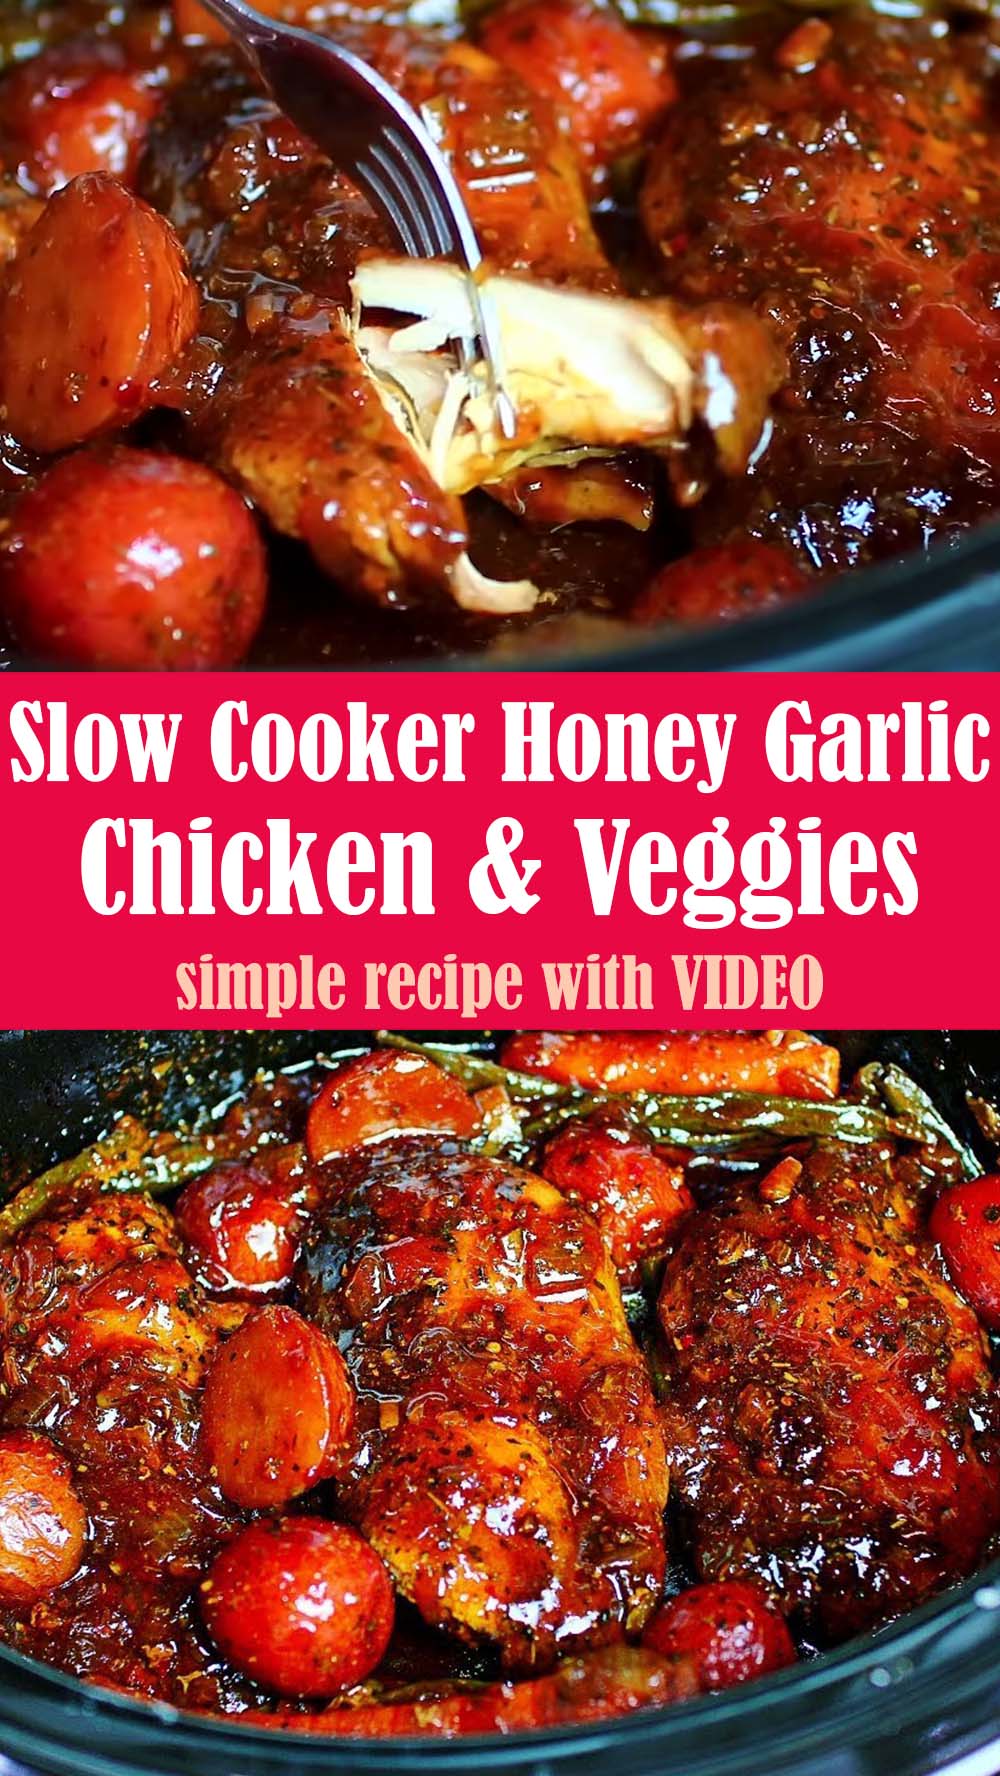 Slow Cooker Honey Garlic Chicken and Veggies Recipe